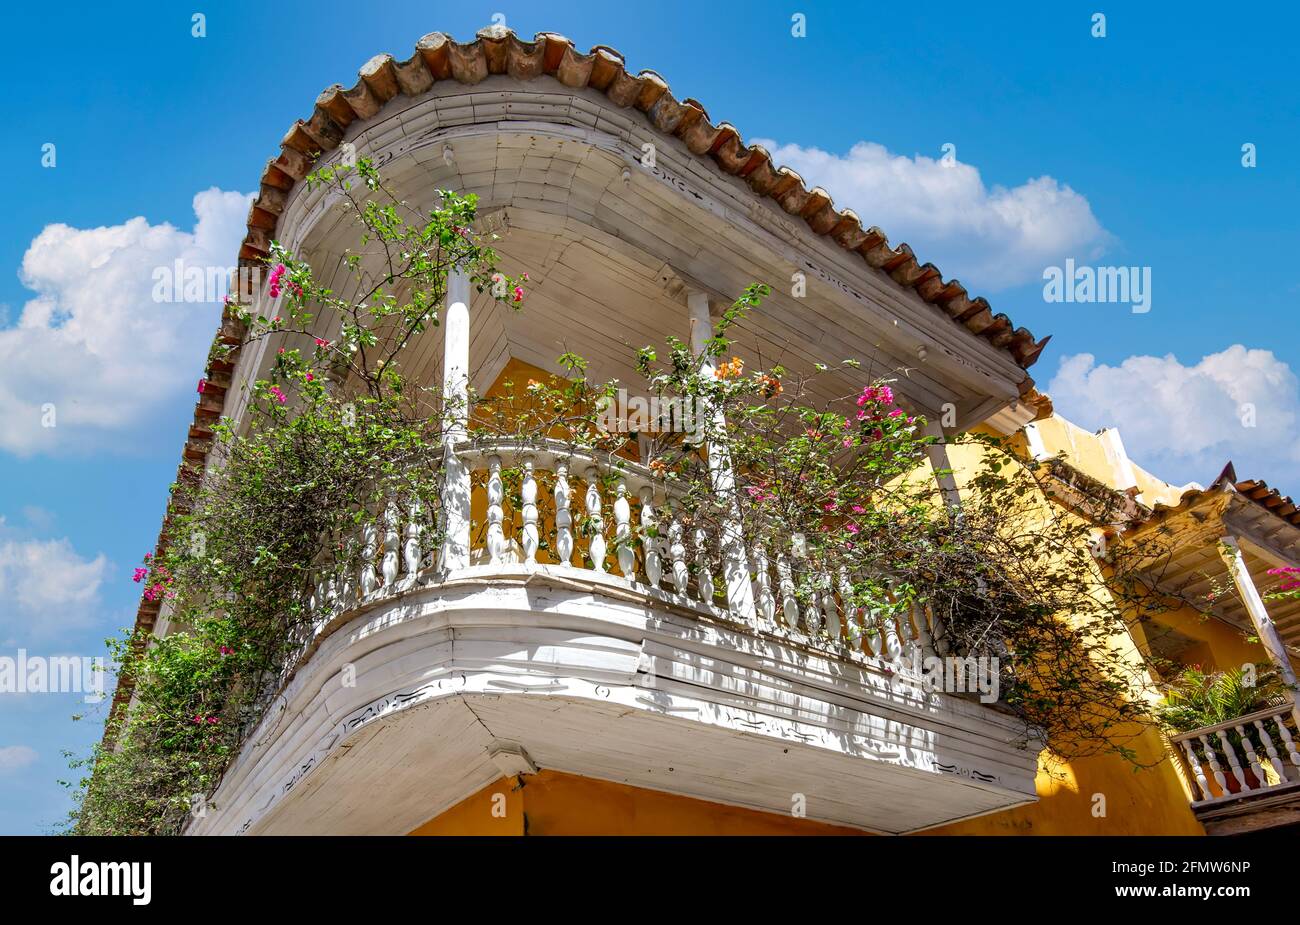 La famosa città coloniale fortificata di Cartagena, Cuidad Amurrallada, e i suoi edifici colorati nel centro storico della città, dichiarato Patrimonio dell'Umanità dall'UNESCO. Foto Stock